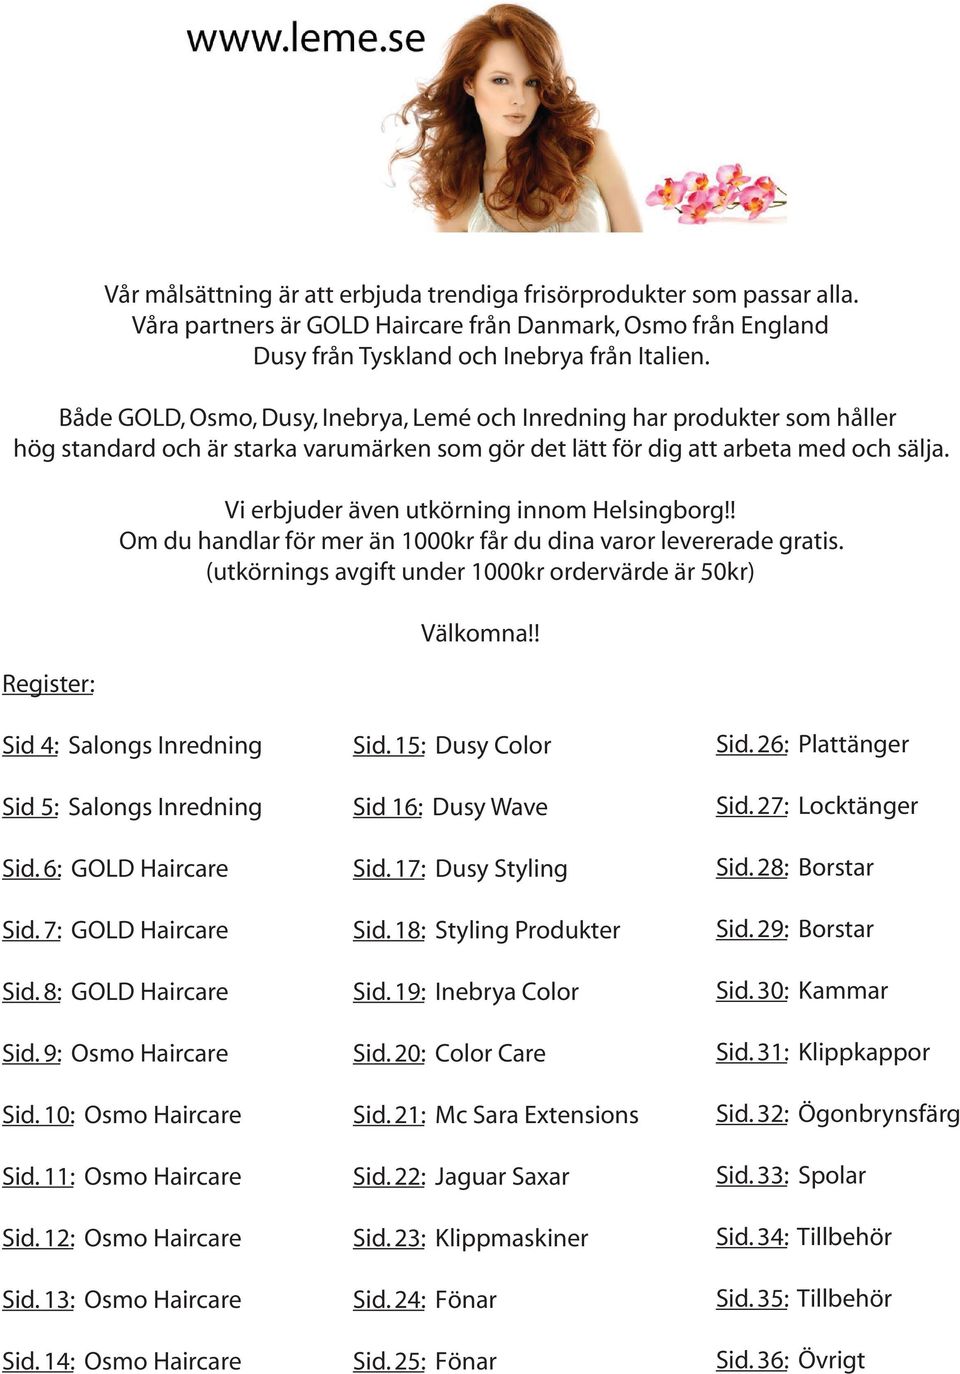 Register: Vi erbjuder även utkörning innom Helsingborg!! Om du handlar för mer än 1000kr får du dina varor levererade gratis. (utkörnings avgift under 1000kr ordervärde är 50kr) Välkomna!